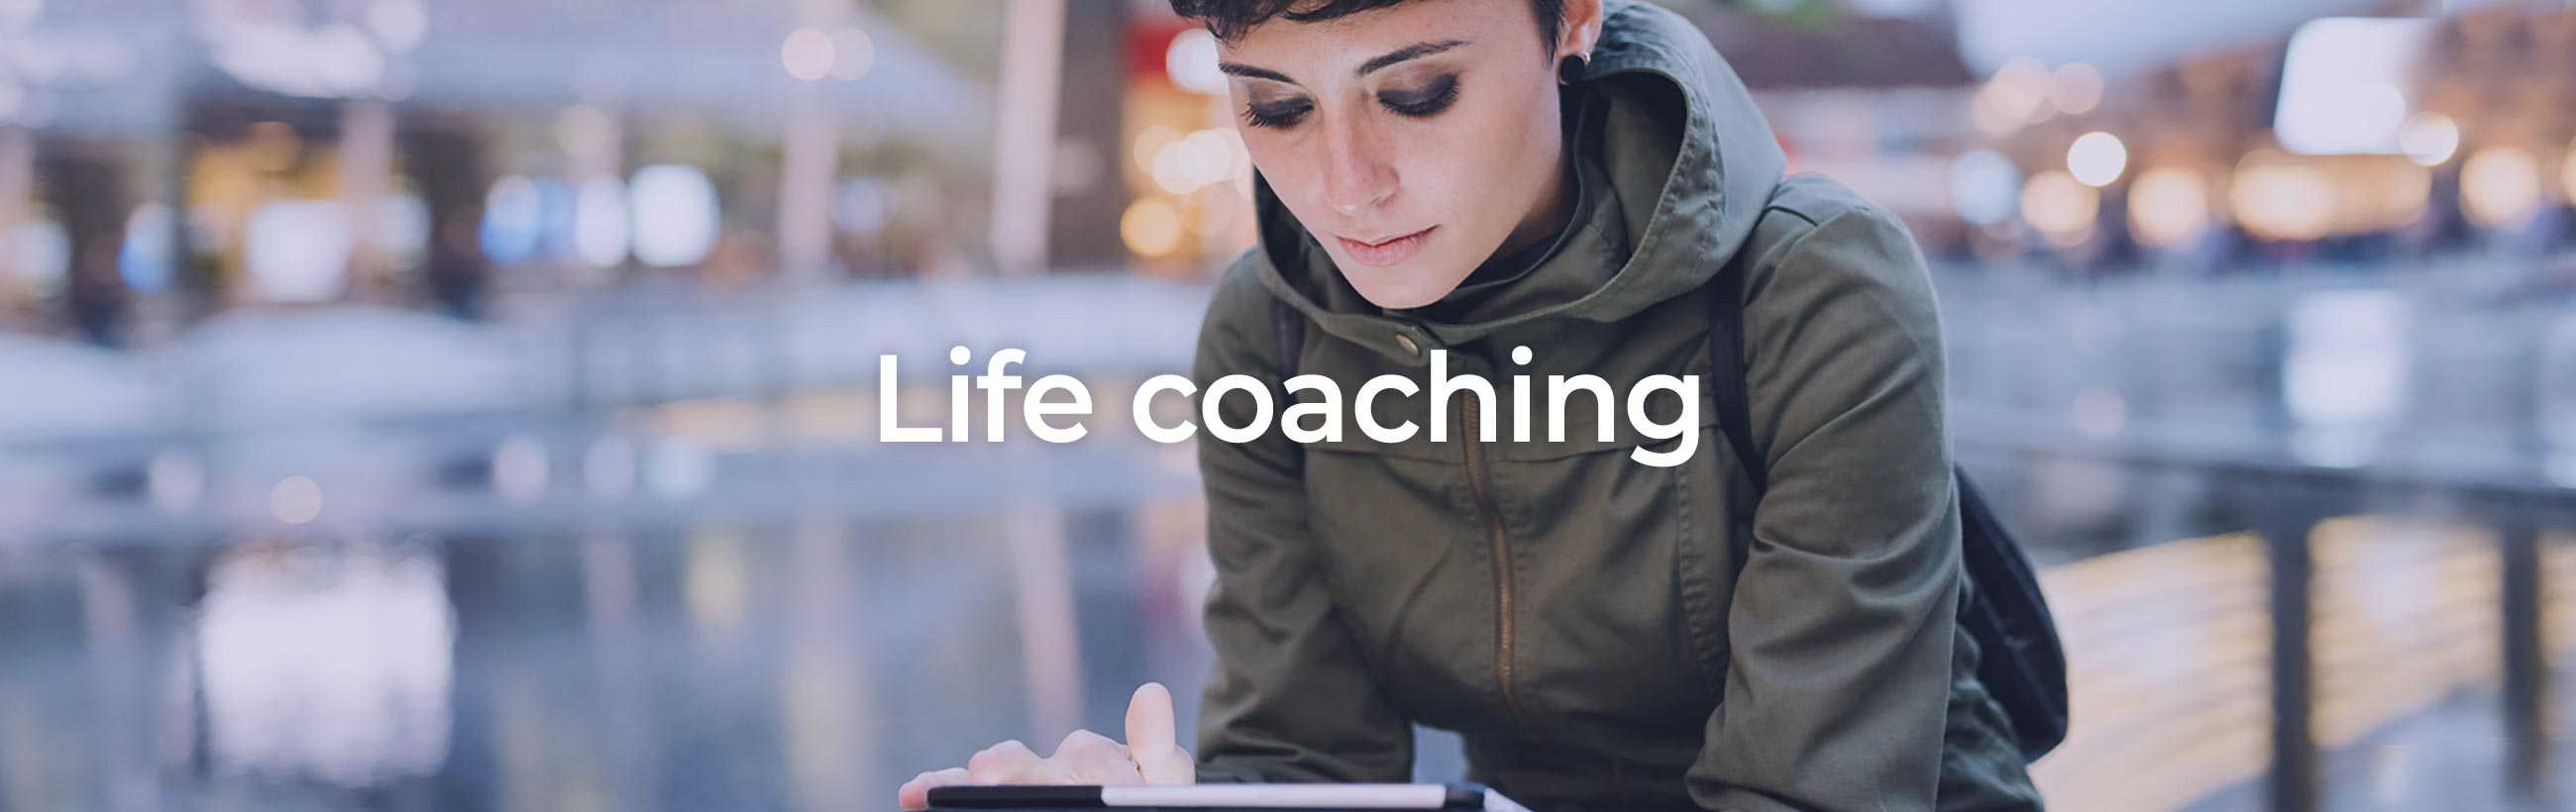 Coaching de vie - Life coaching - Blueberry Hill